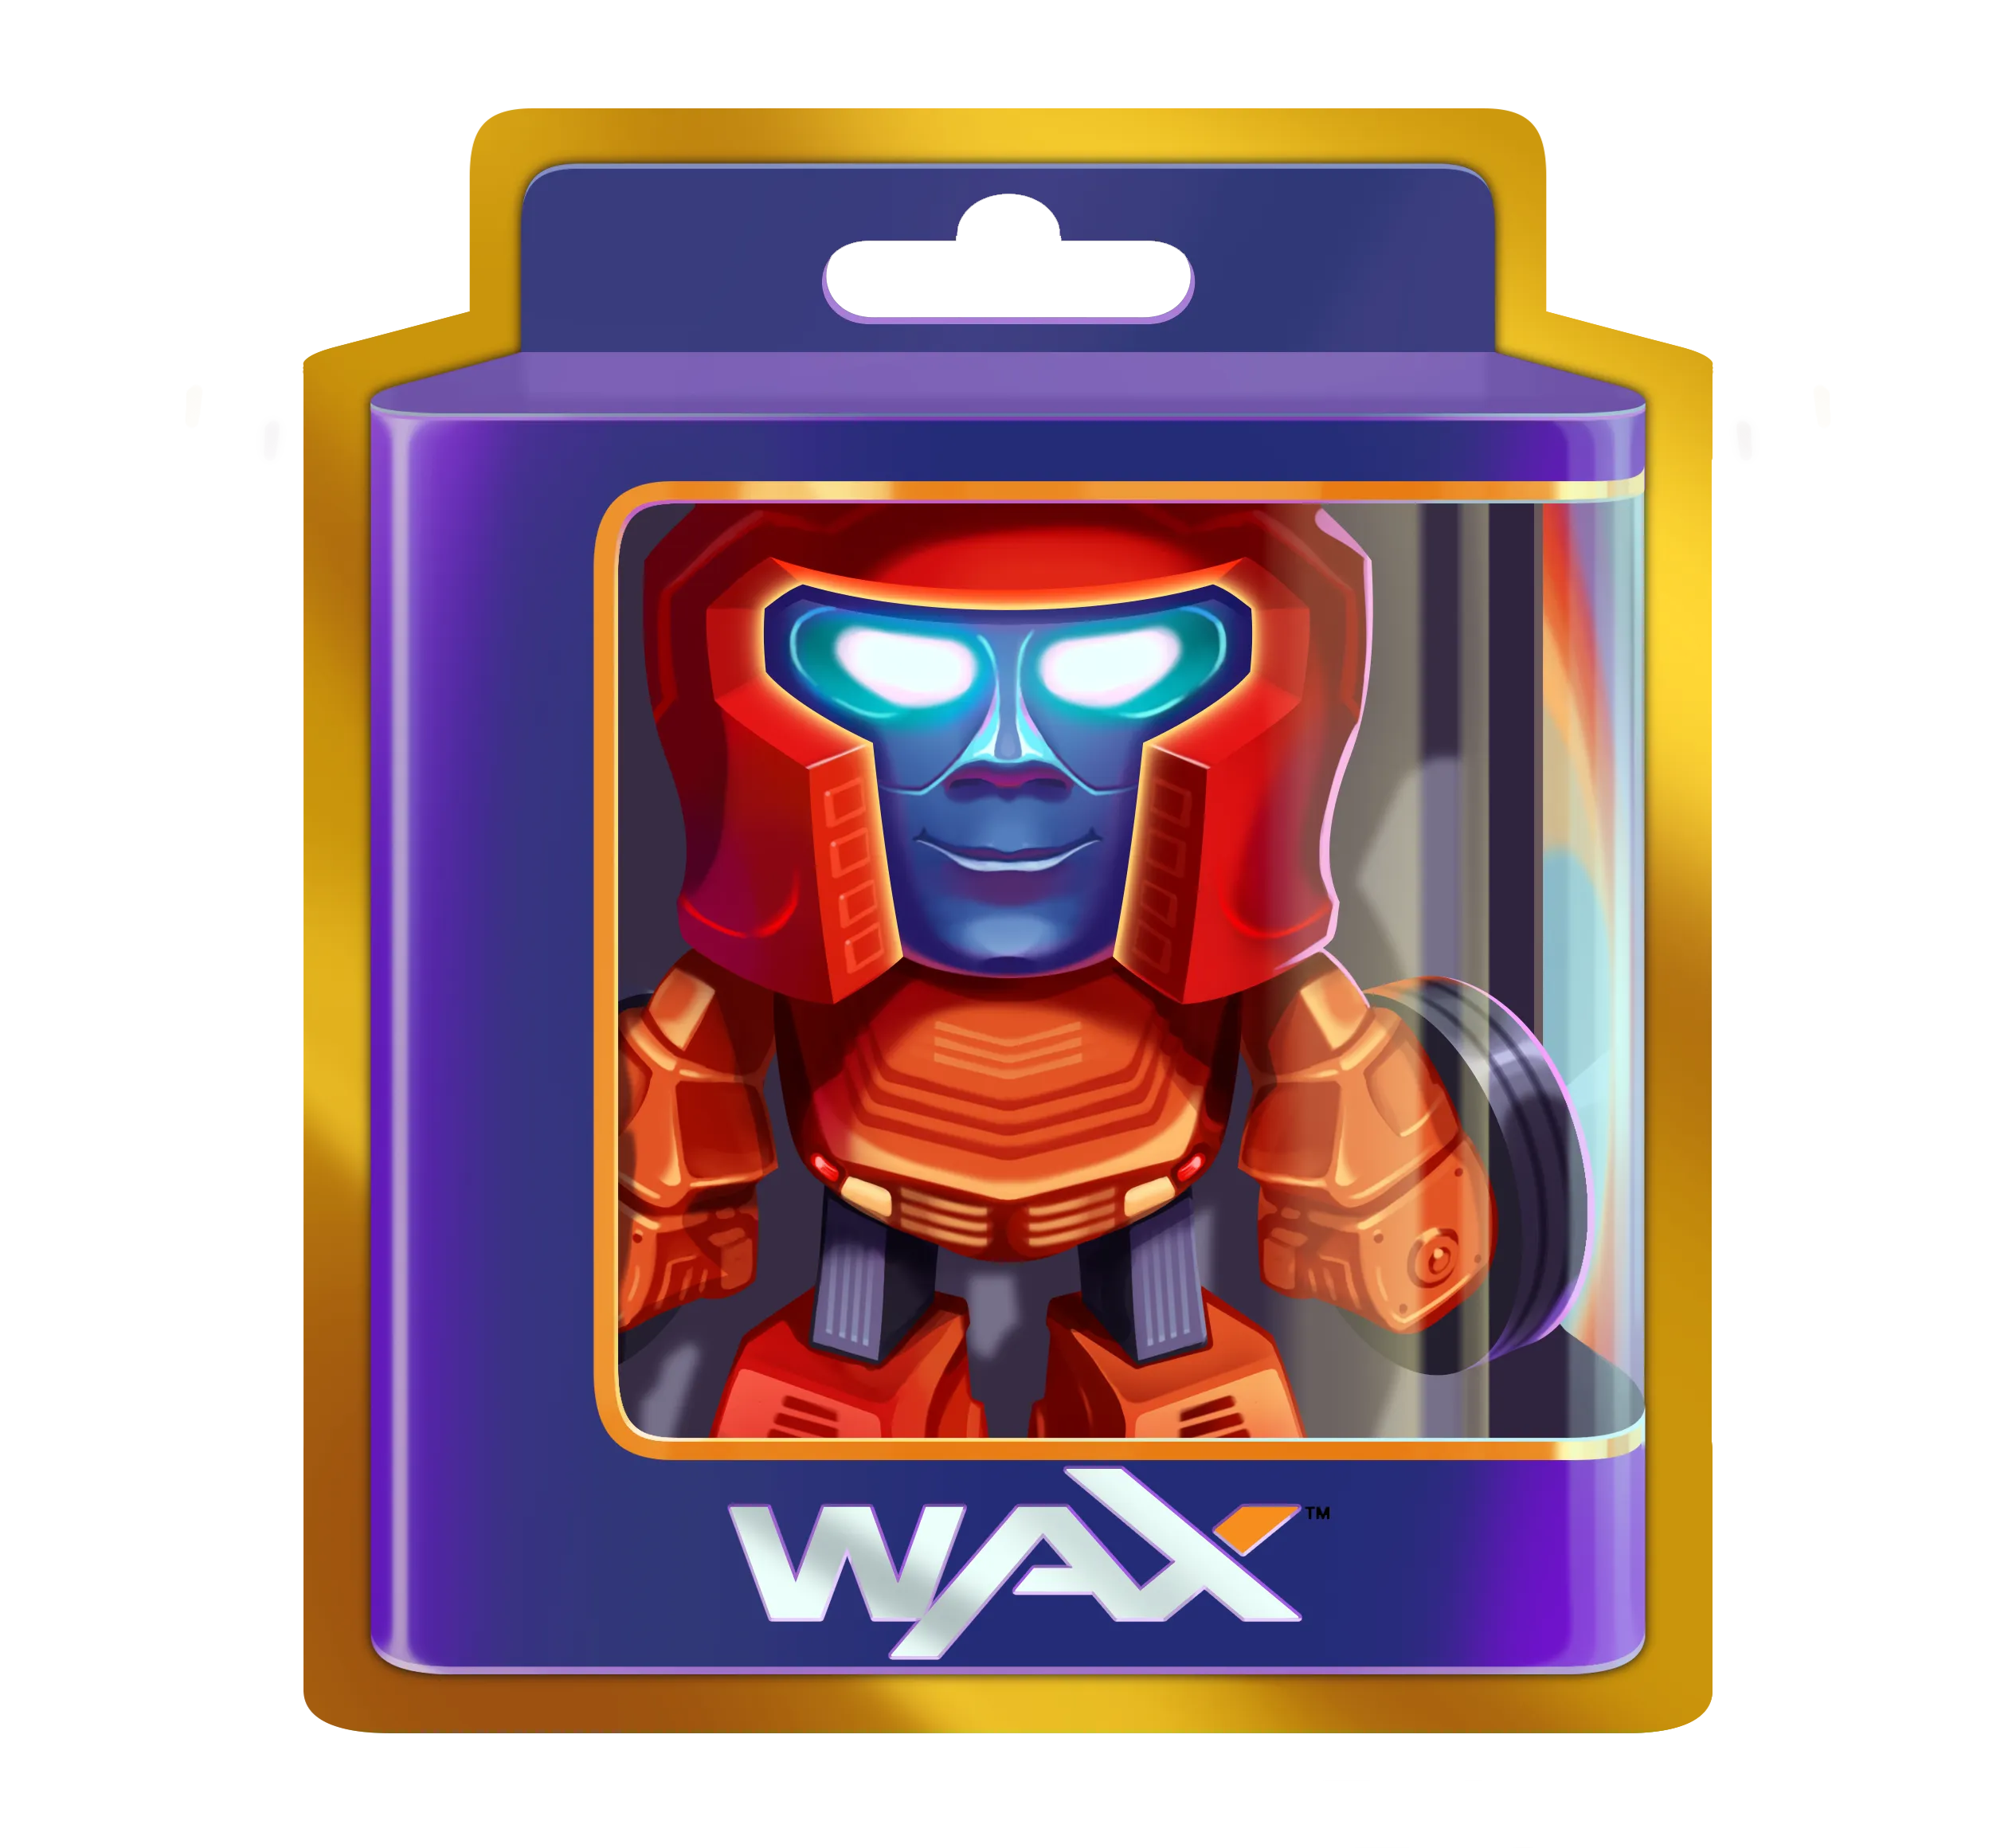 Juguete digital WAX en una caja.